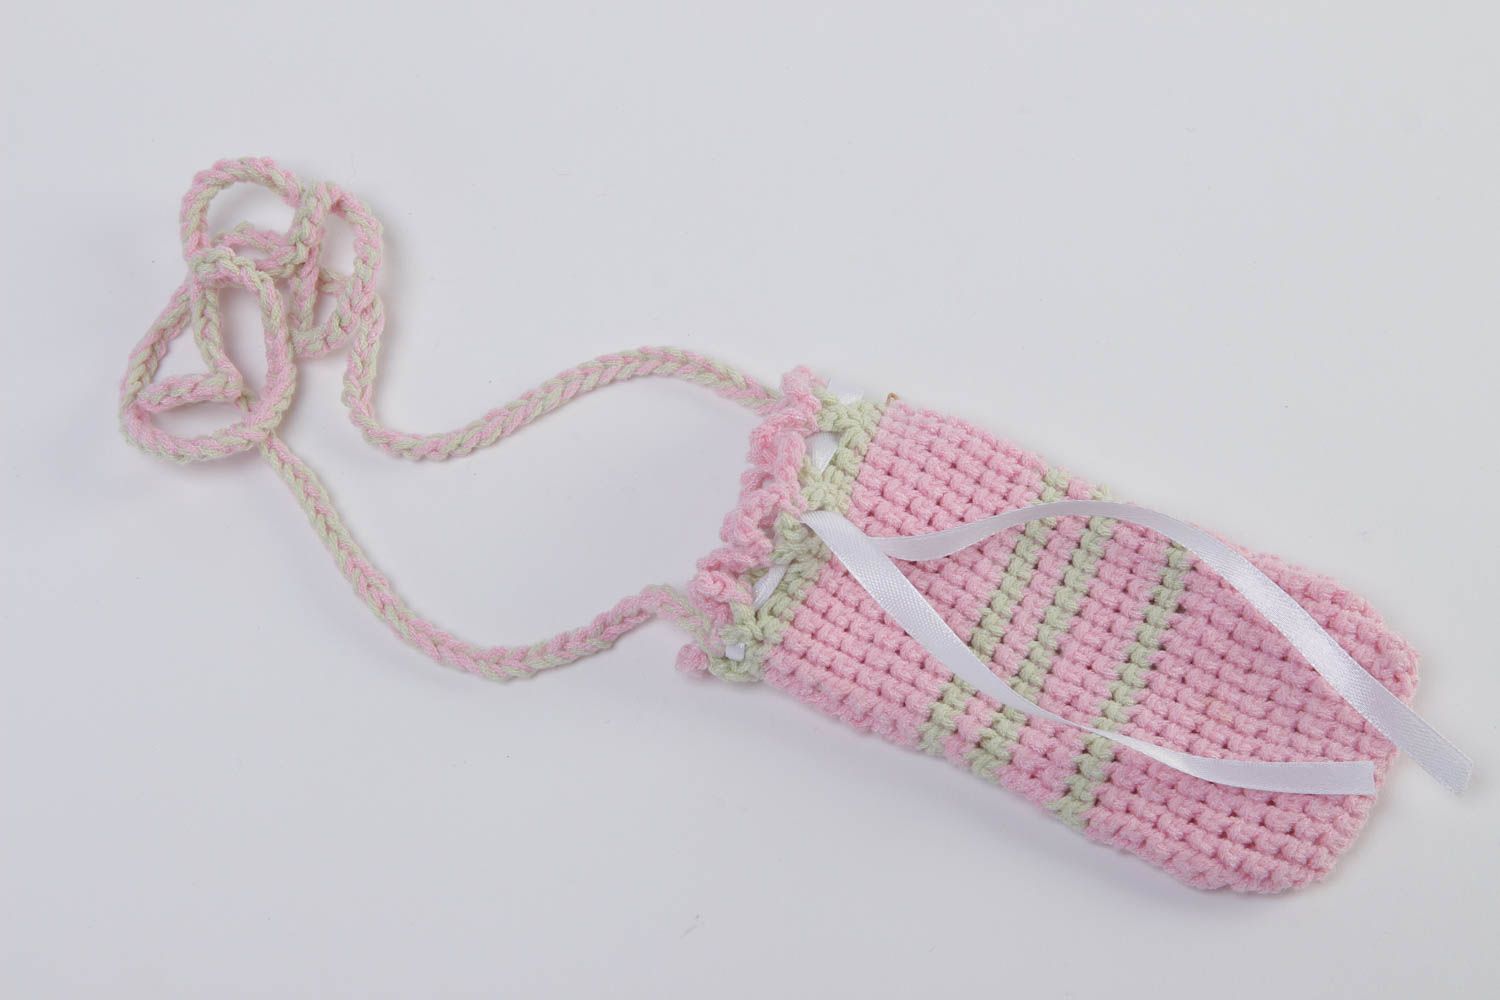 Beautiful handmade crochet phone case gadget accessories crochet ideas photo 2